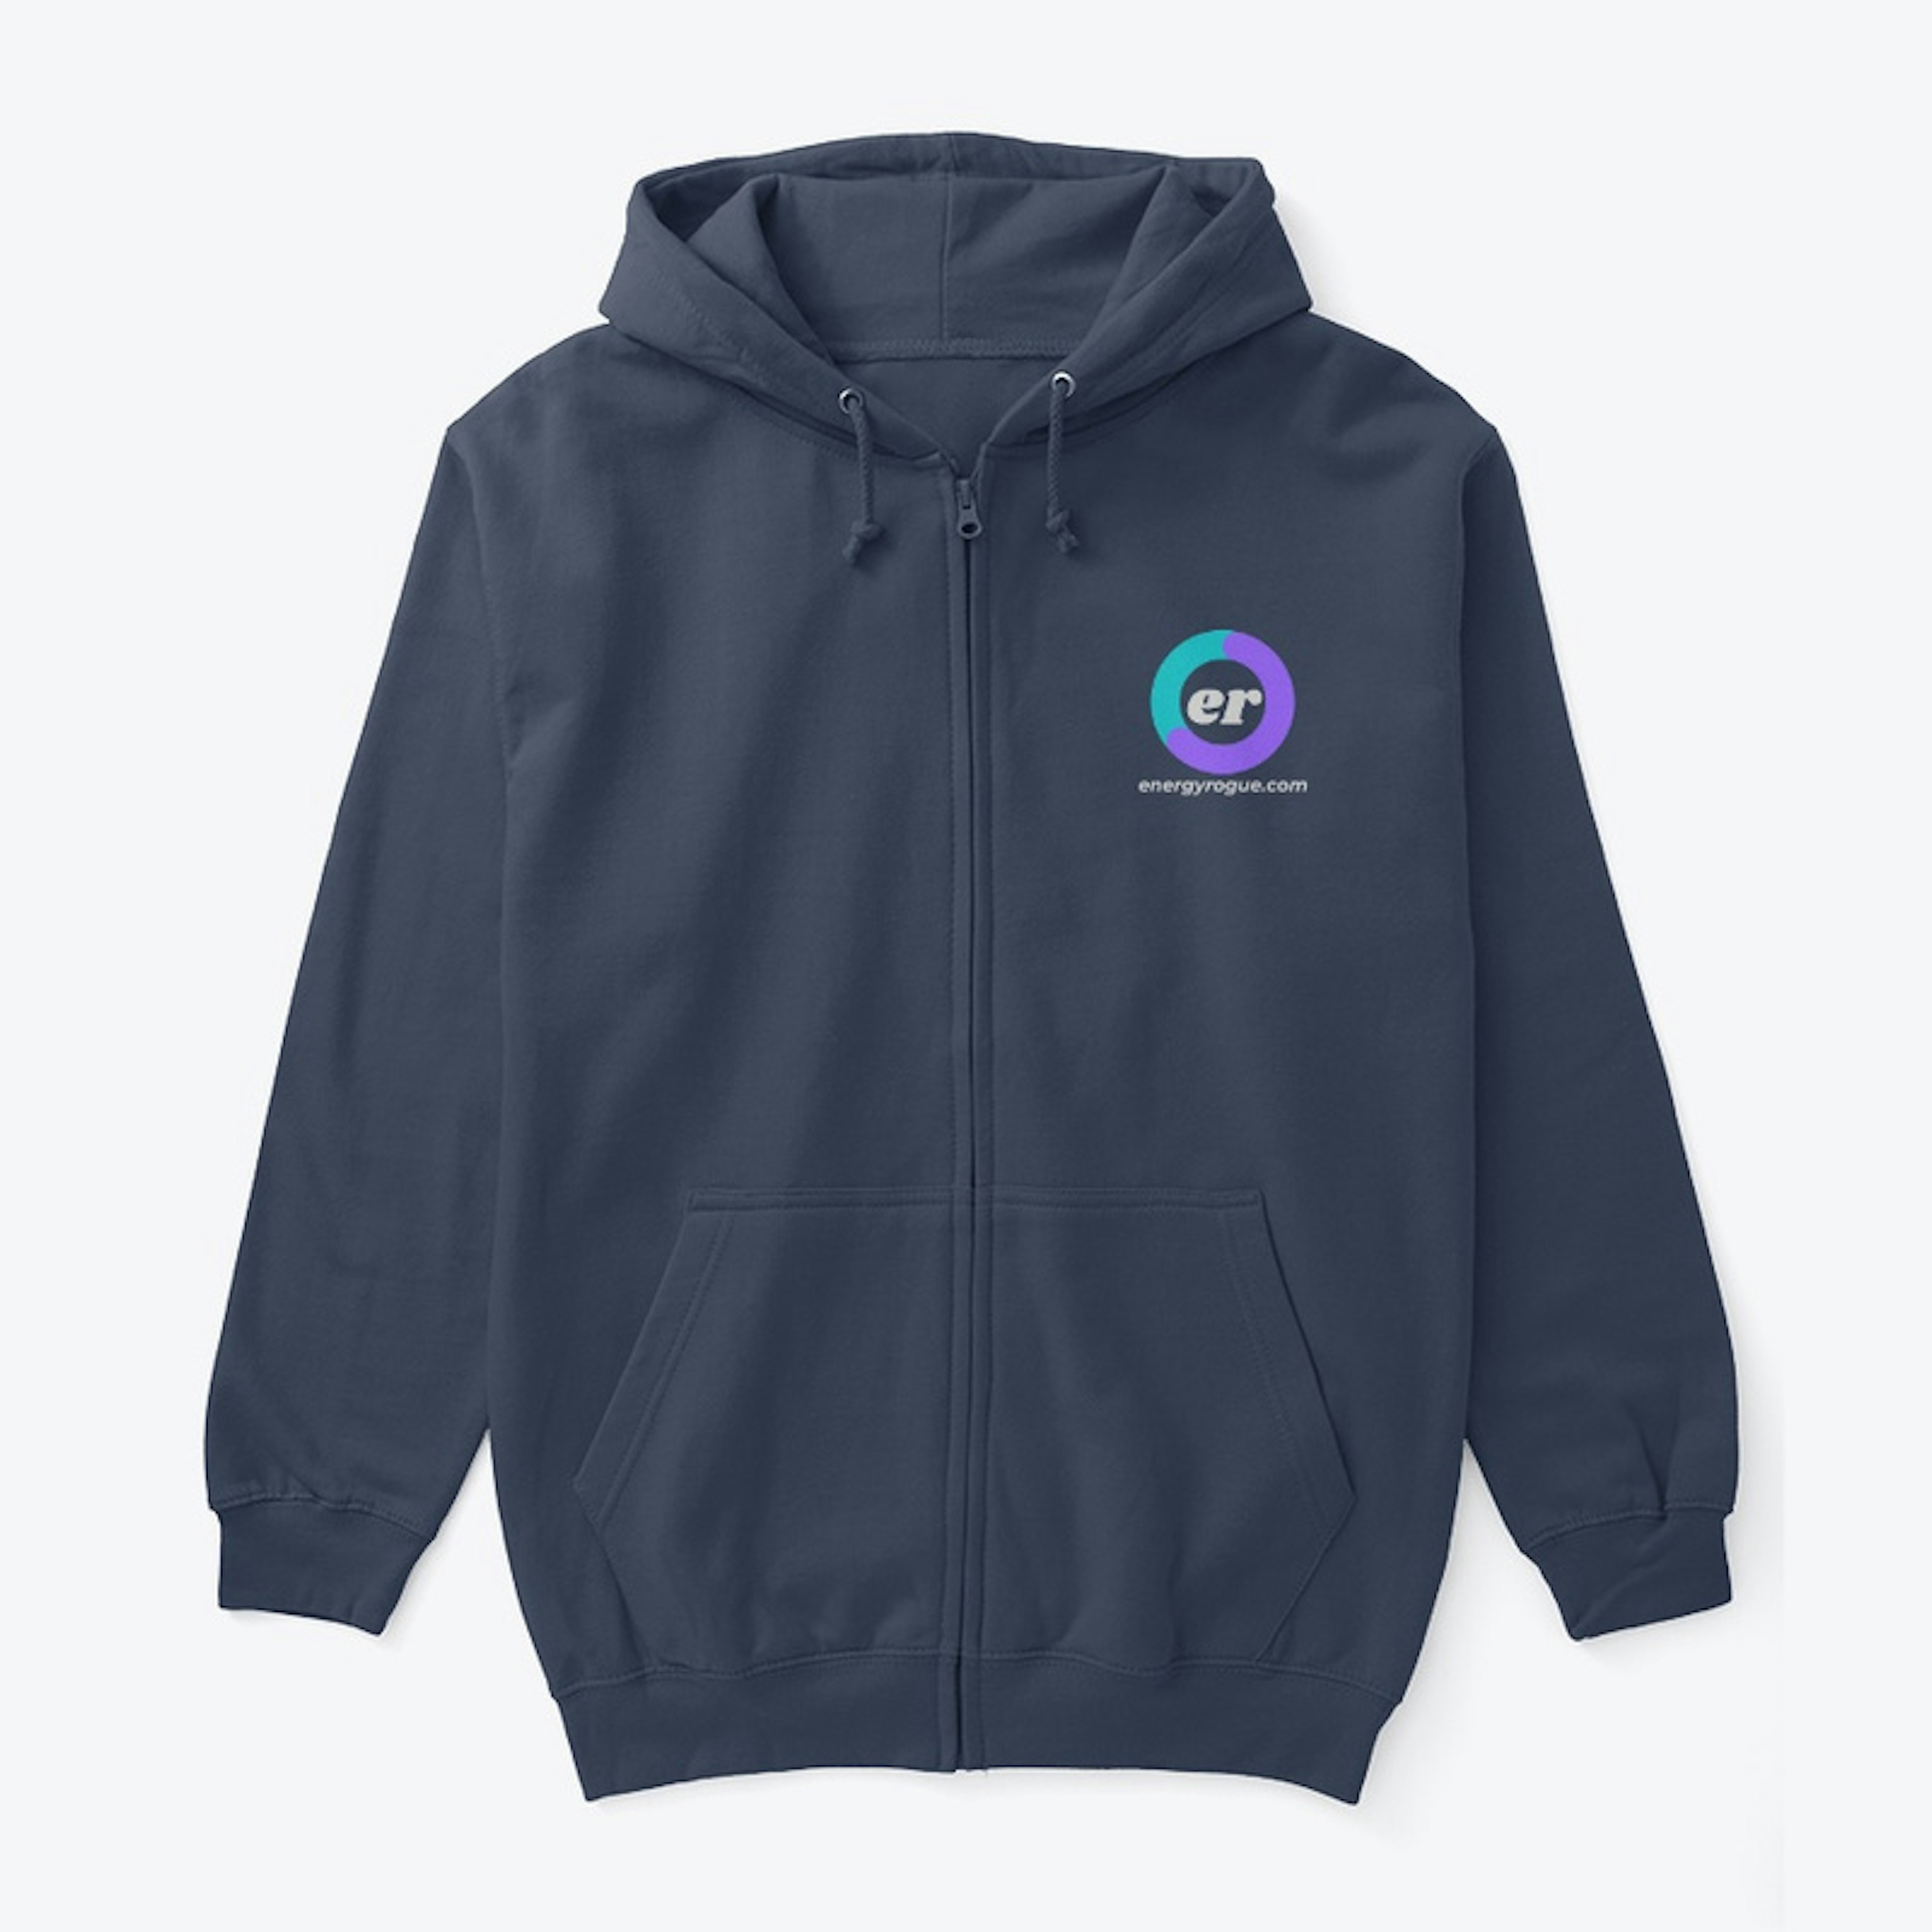 energyrogue.com zipper hoodie